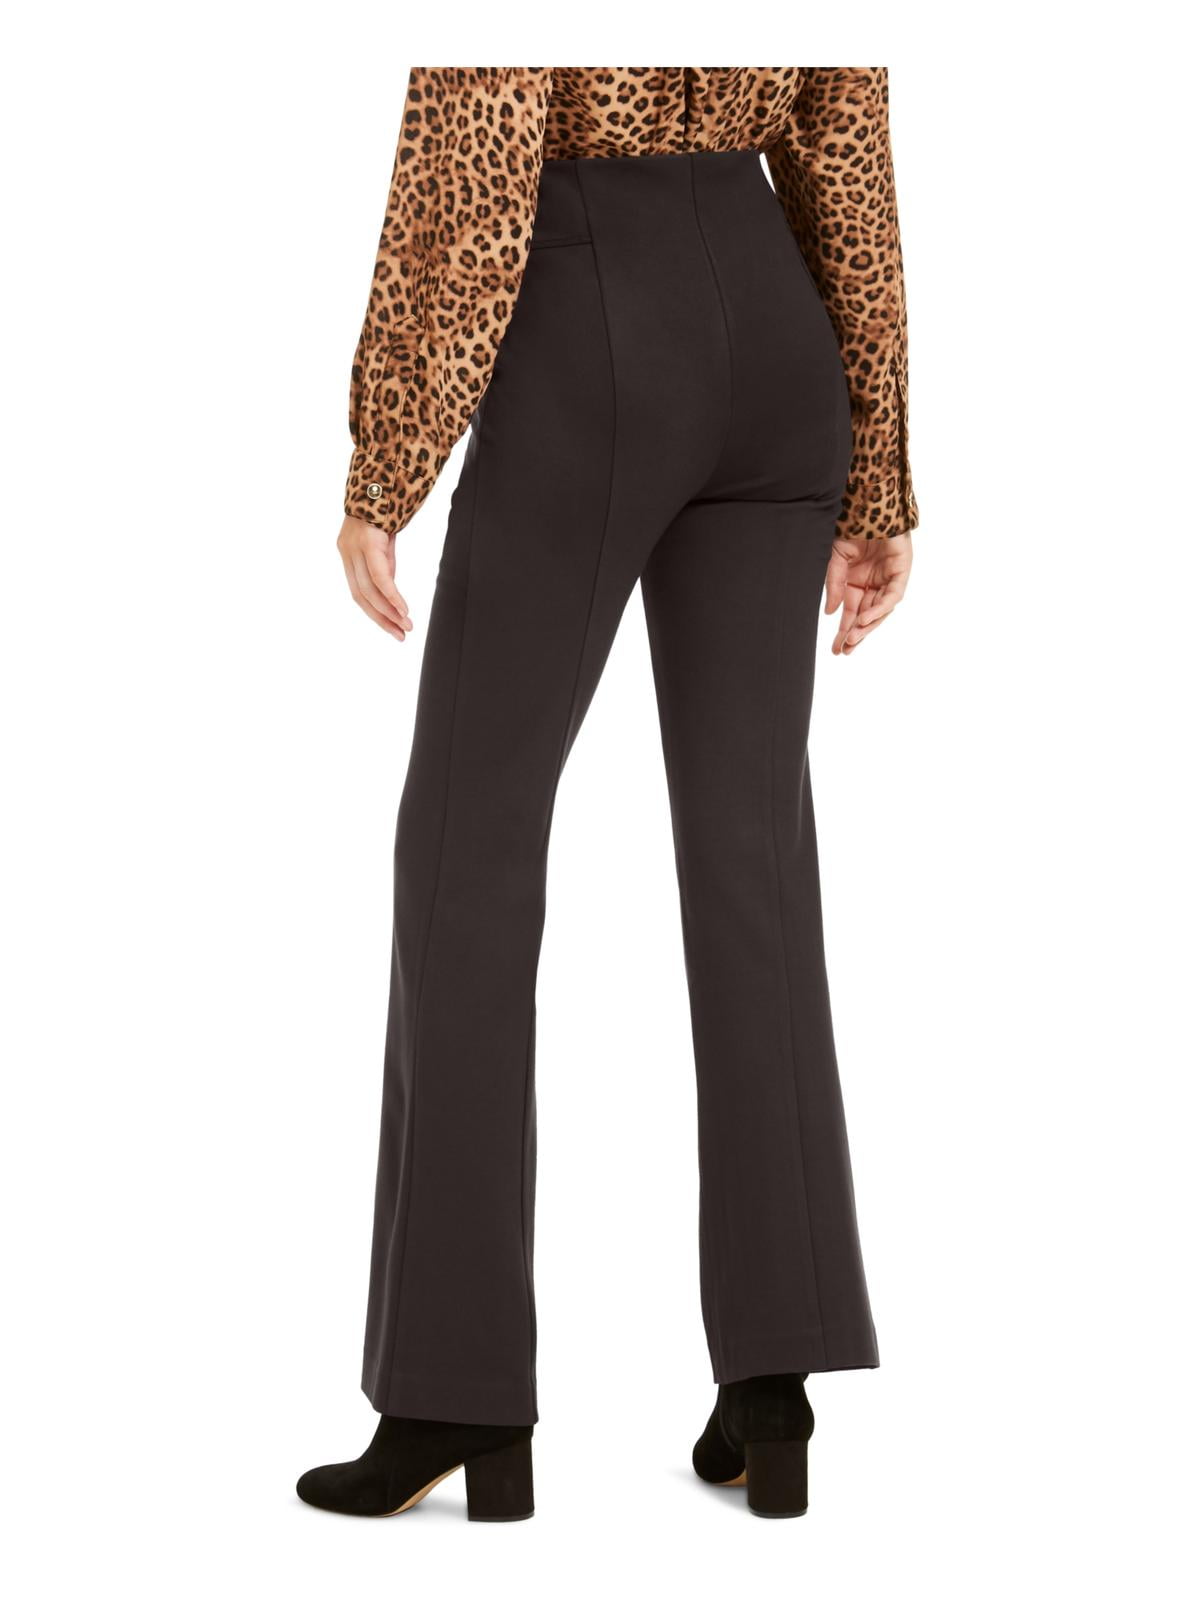 INC Womens High-Waist Curvy Fit Bootcut Pants - Walmart.com